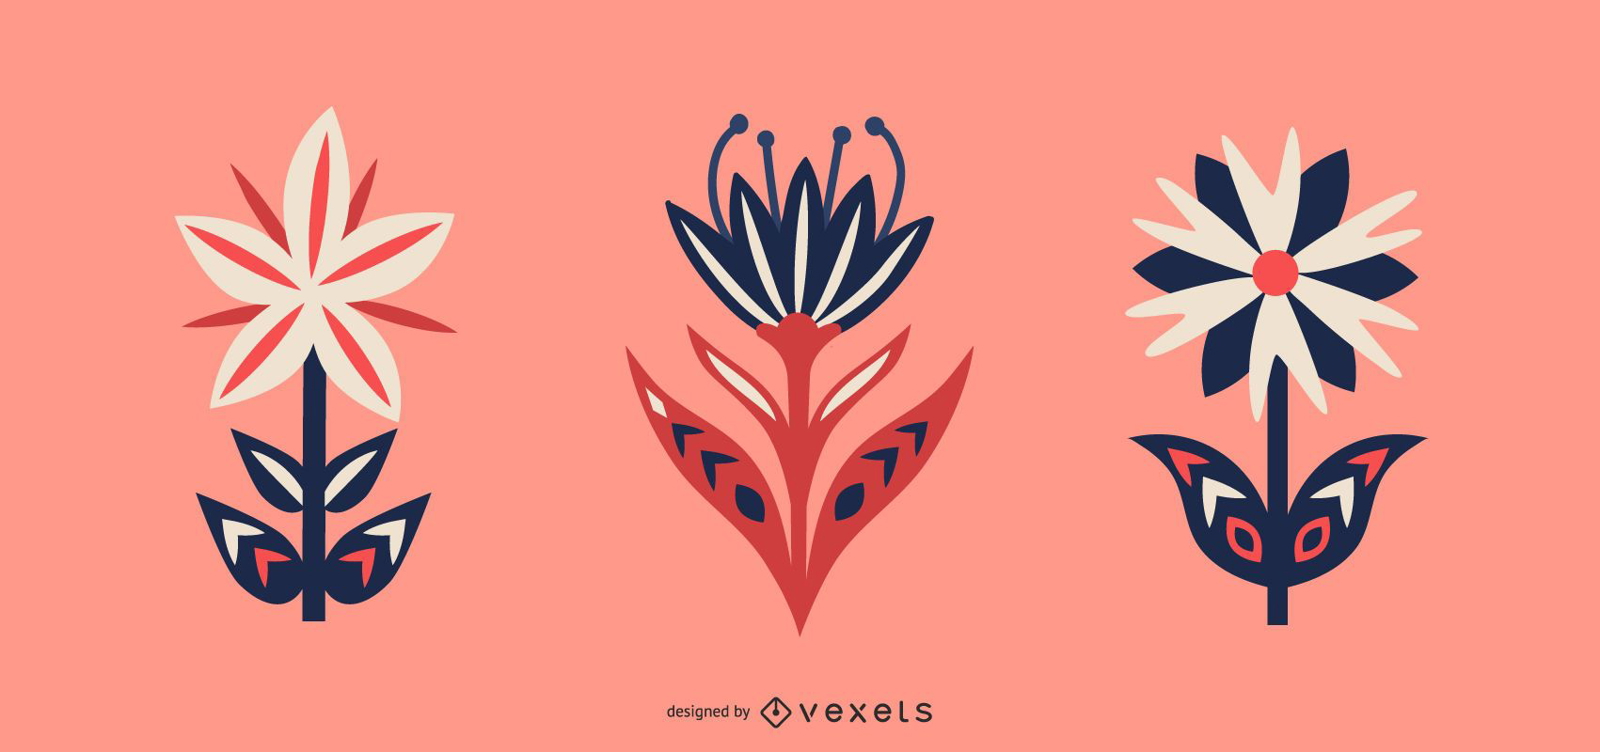 Scandinavian flowers vector set